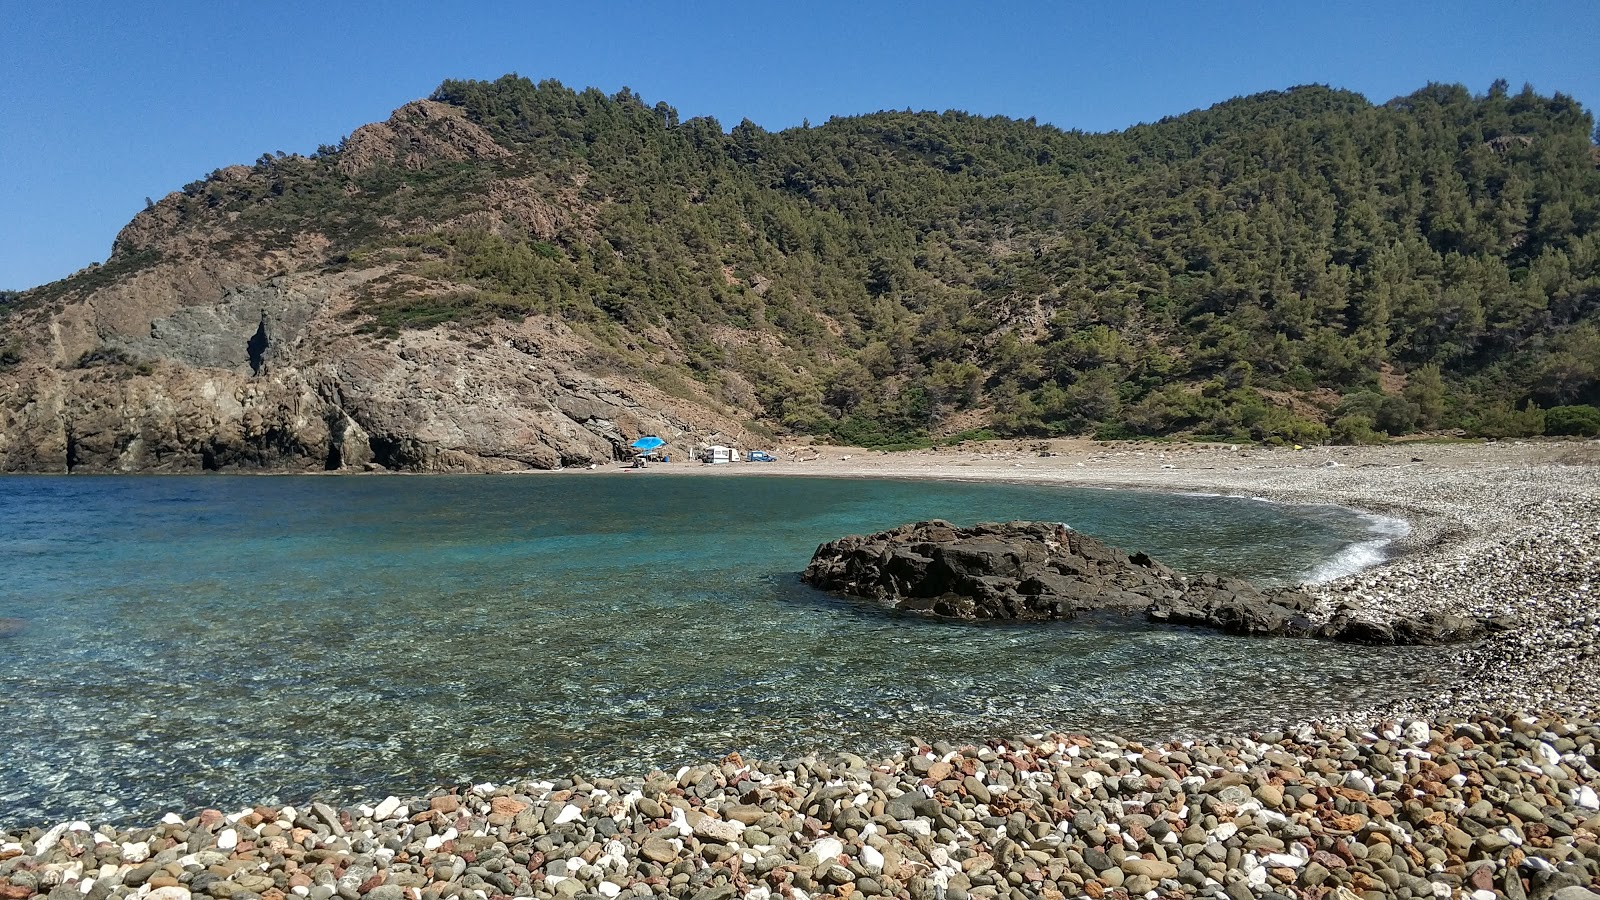 Daphnopotamos beach'in fotoğrafı gri ince çakıl taş yüzey ile